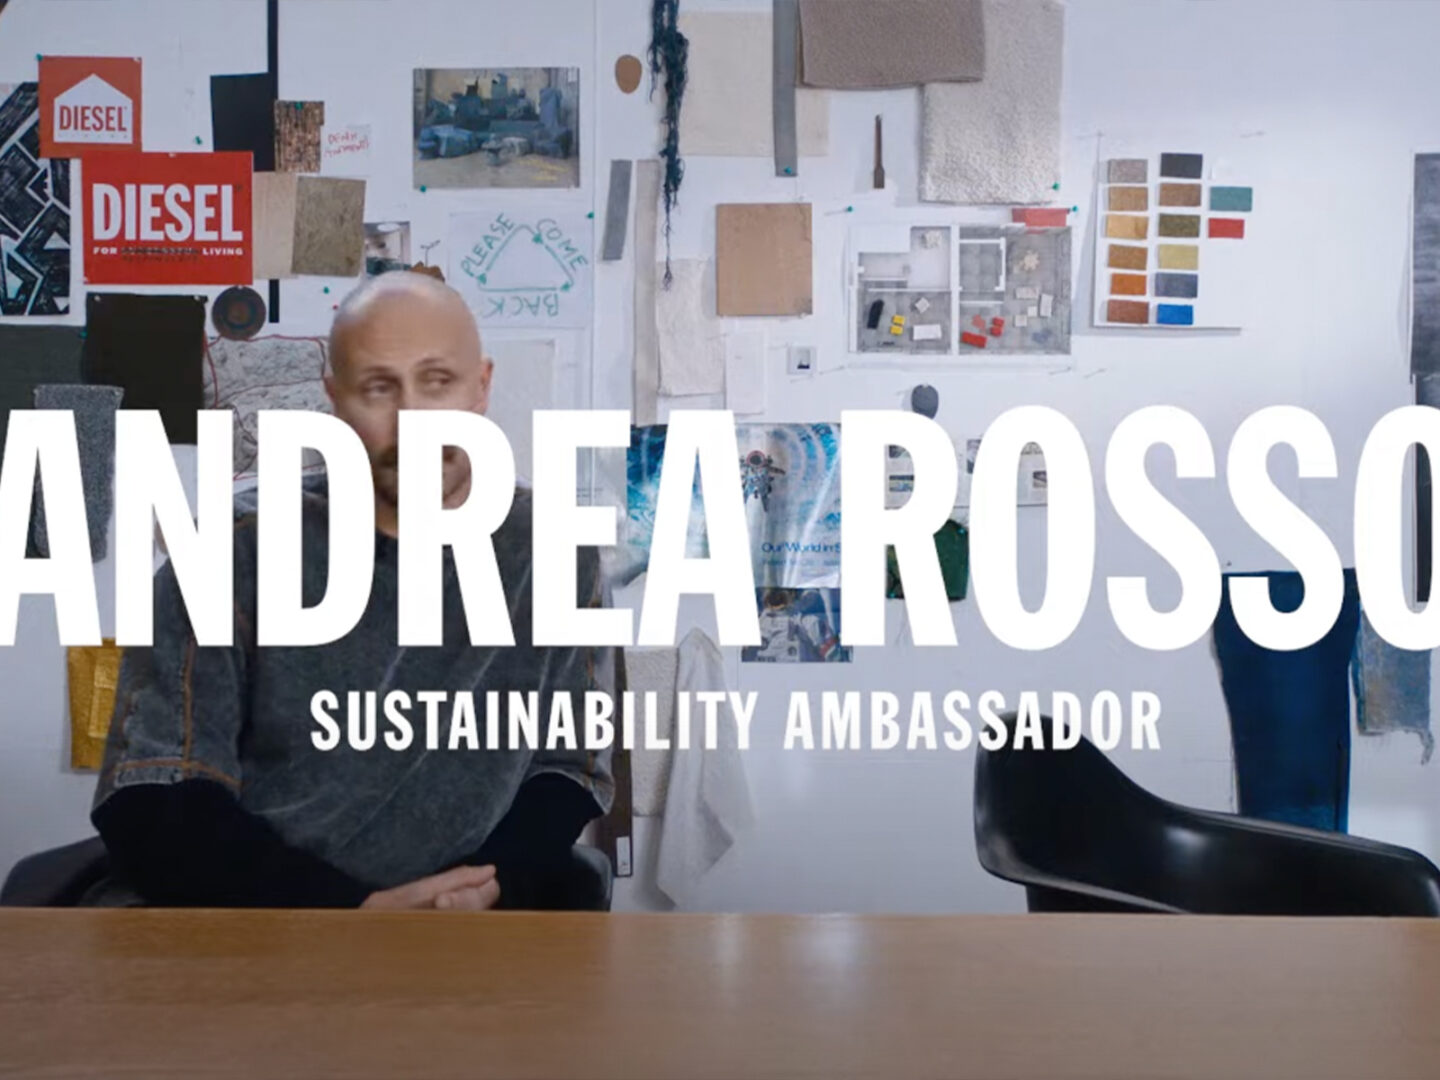 Hablamos w/ Andrea Rosso, Embajador de Sostenibilidad de DIESEL